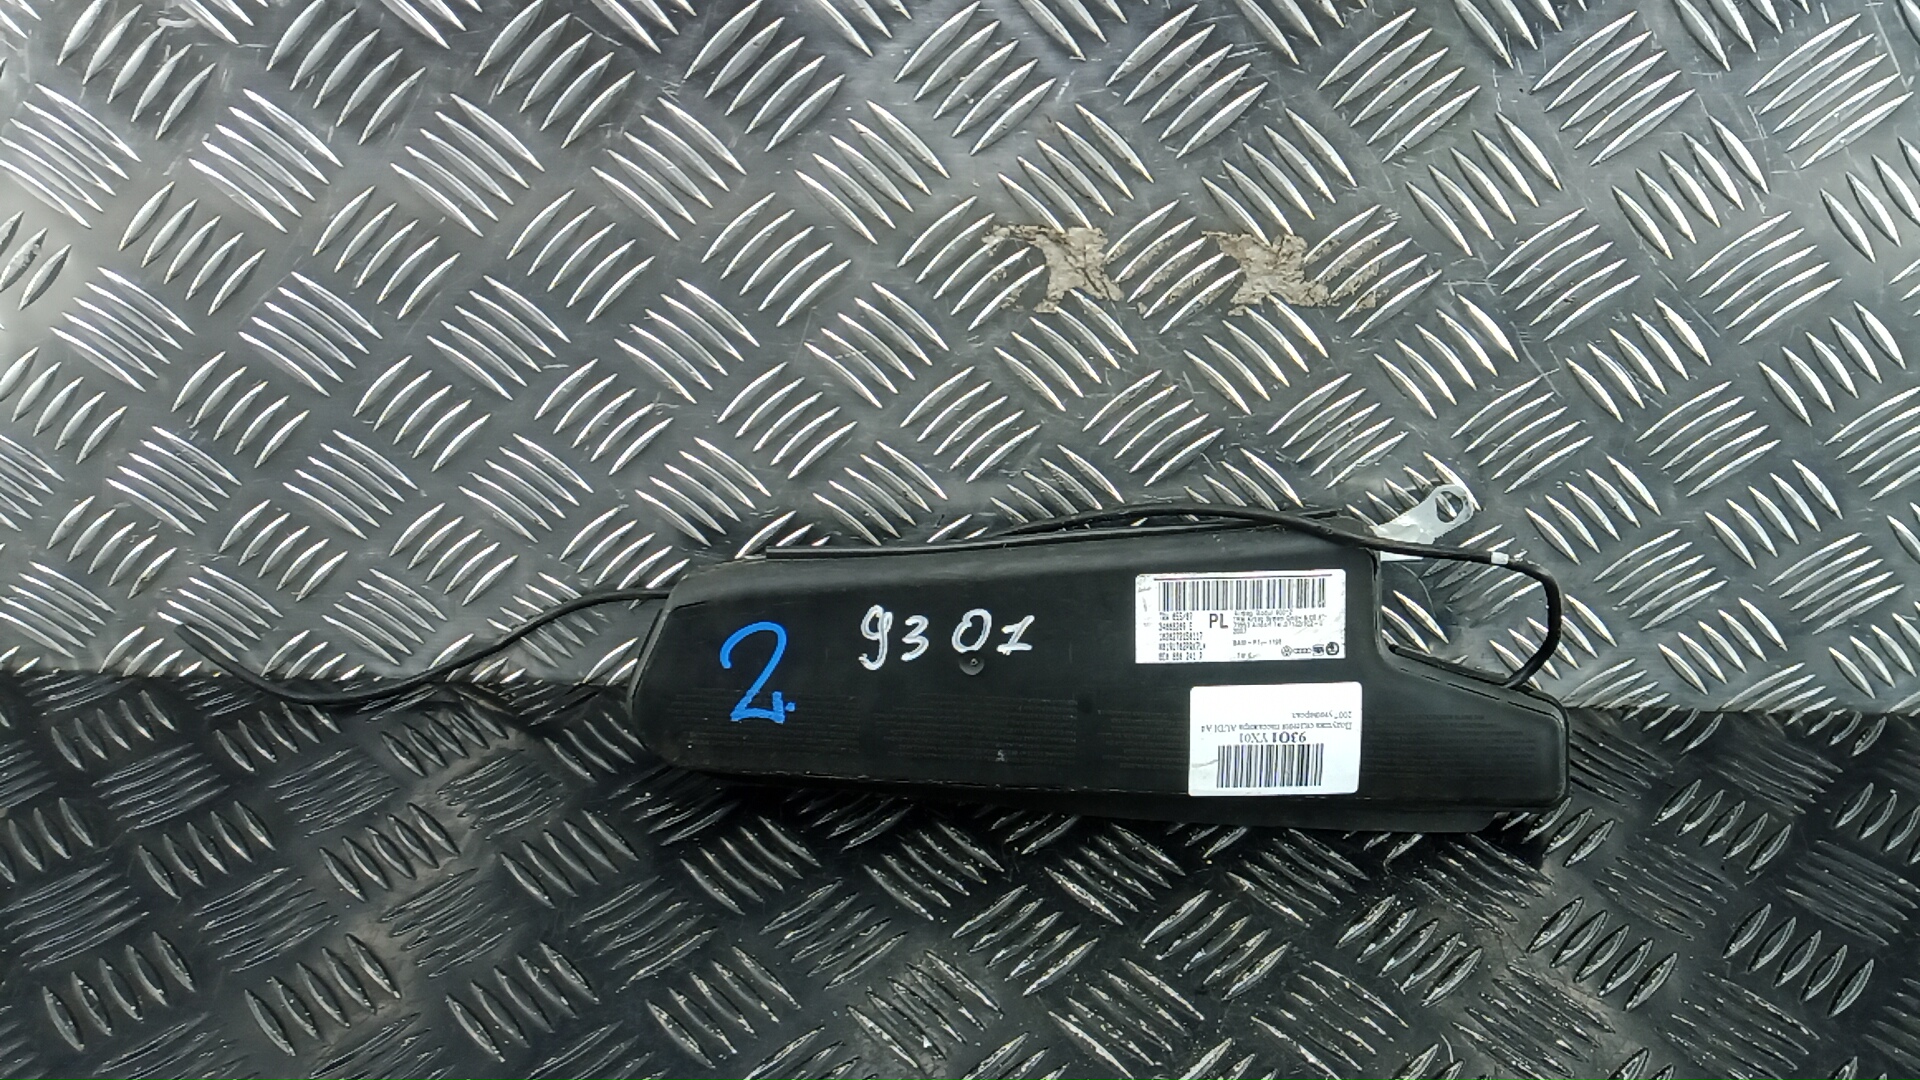 Подушка сидения пассажира - Audi A4 B7 (2004-2007)